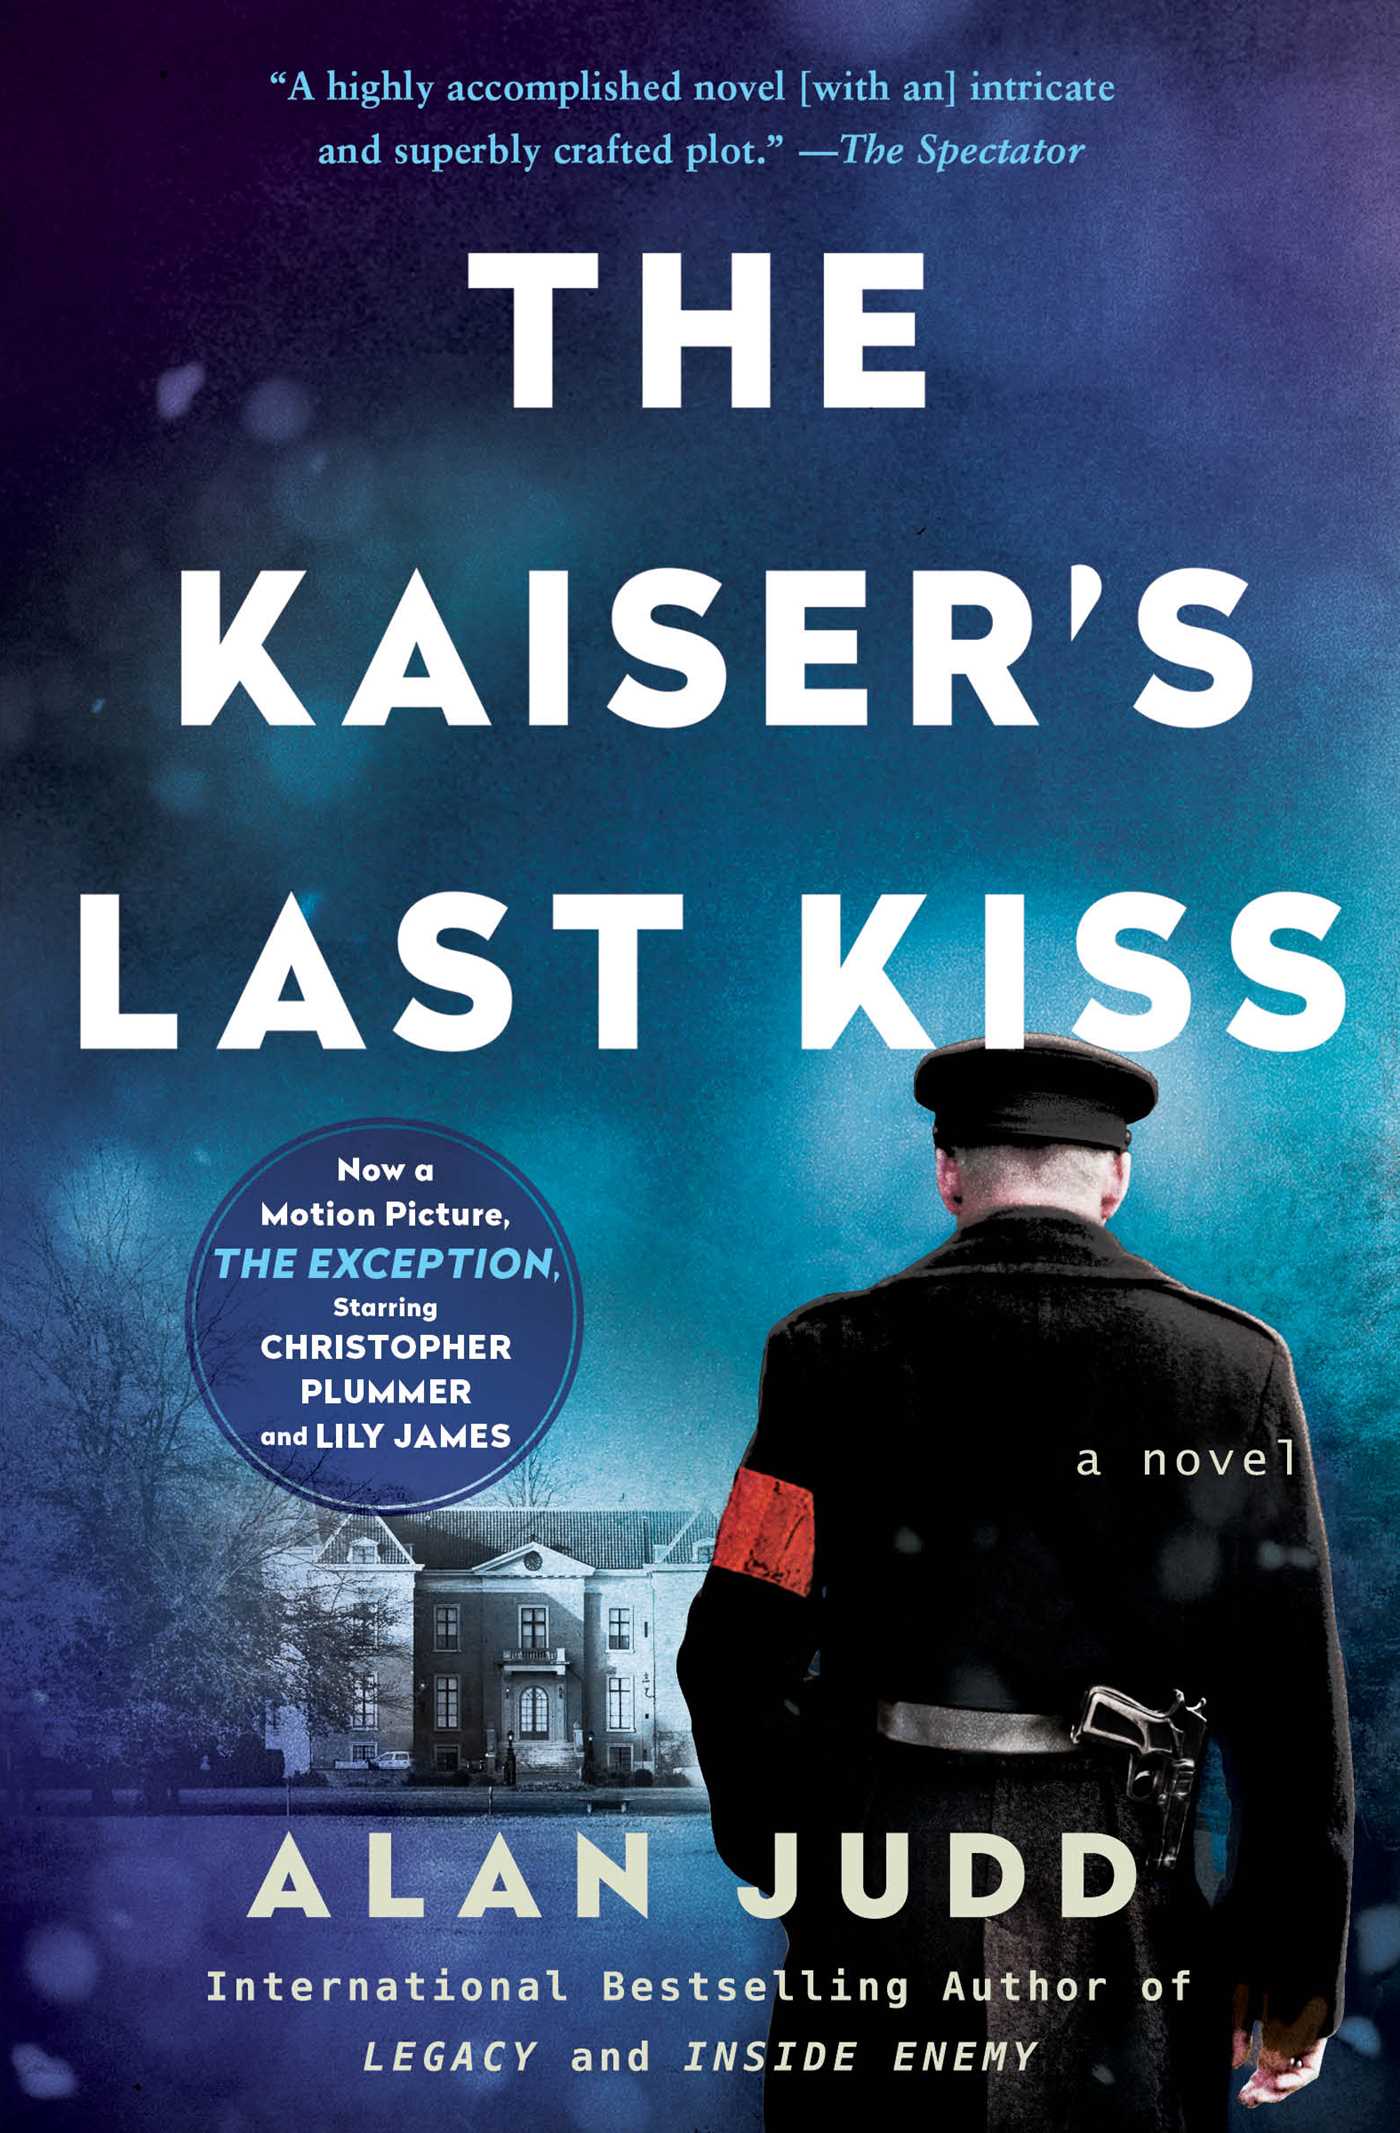 The Kaiser’s Last Kiss